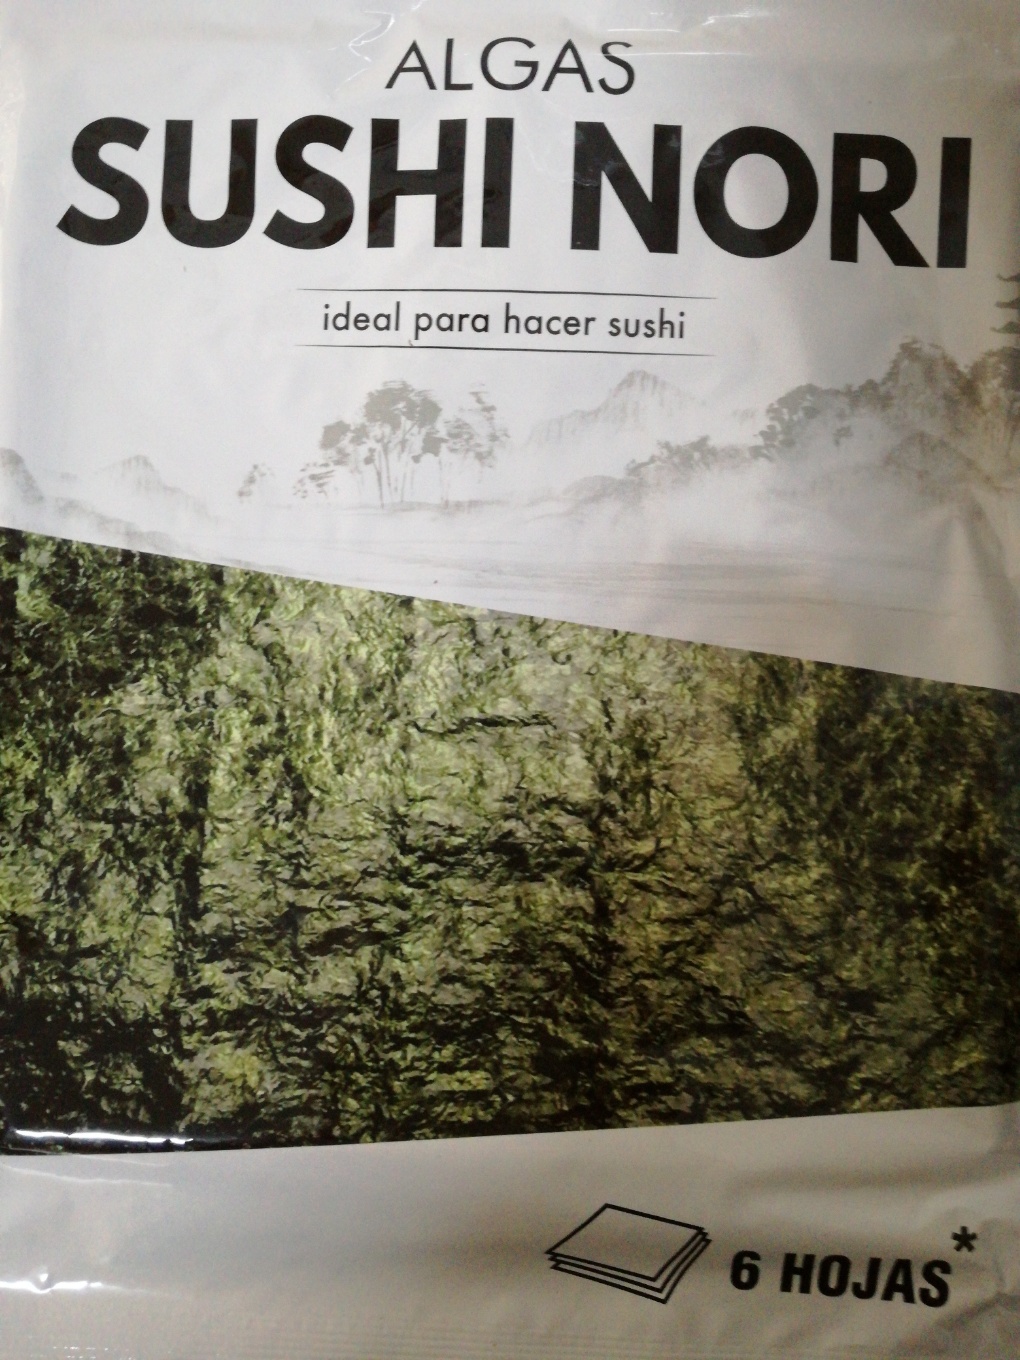 Algas sushi